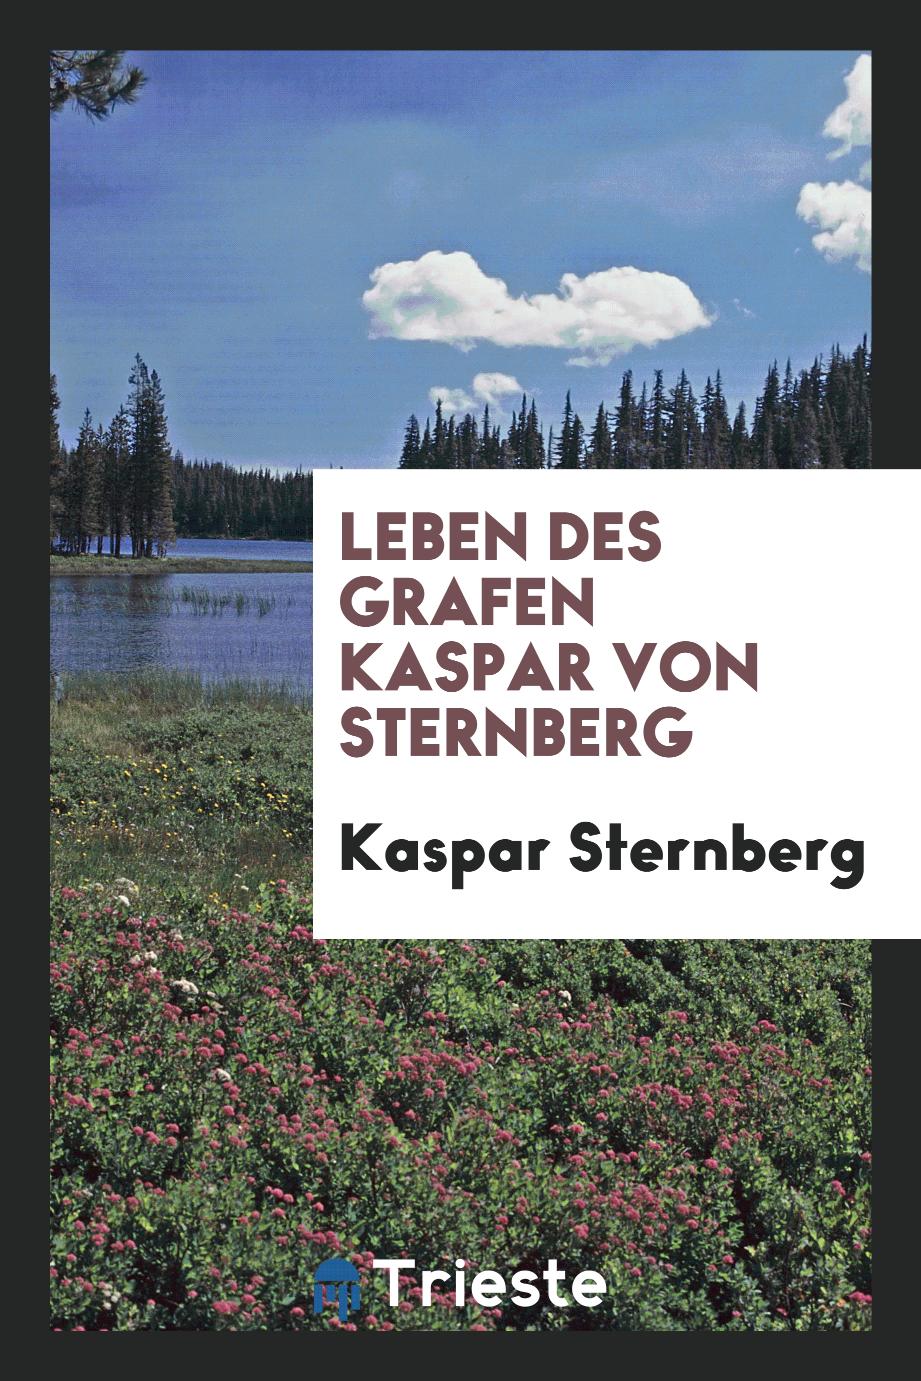 Leben des Grafen Kaspar von Sternberg